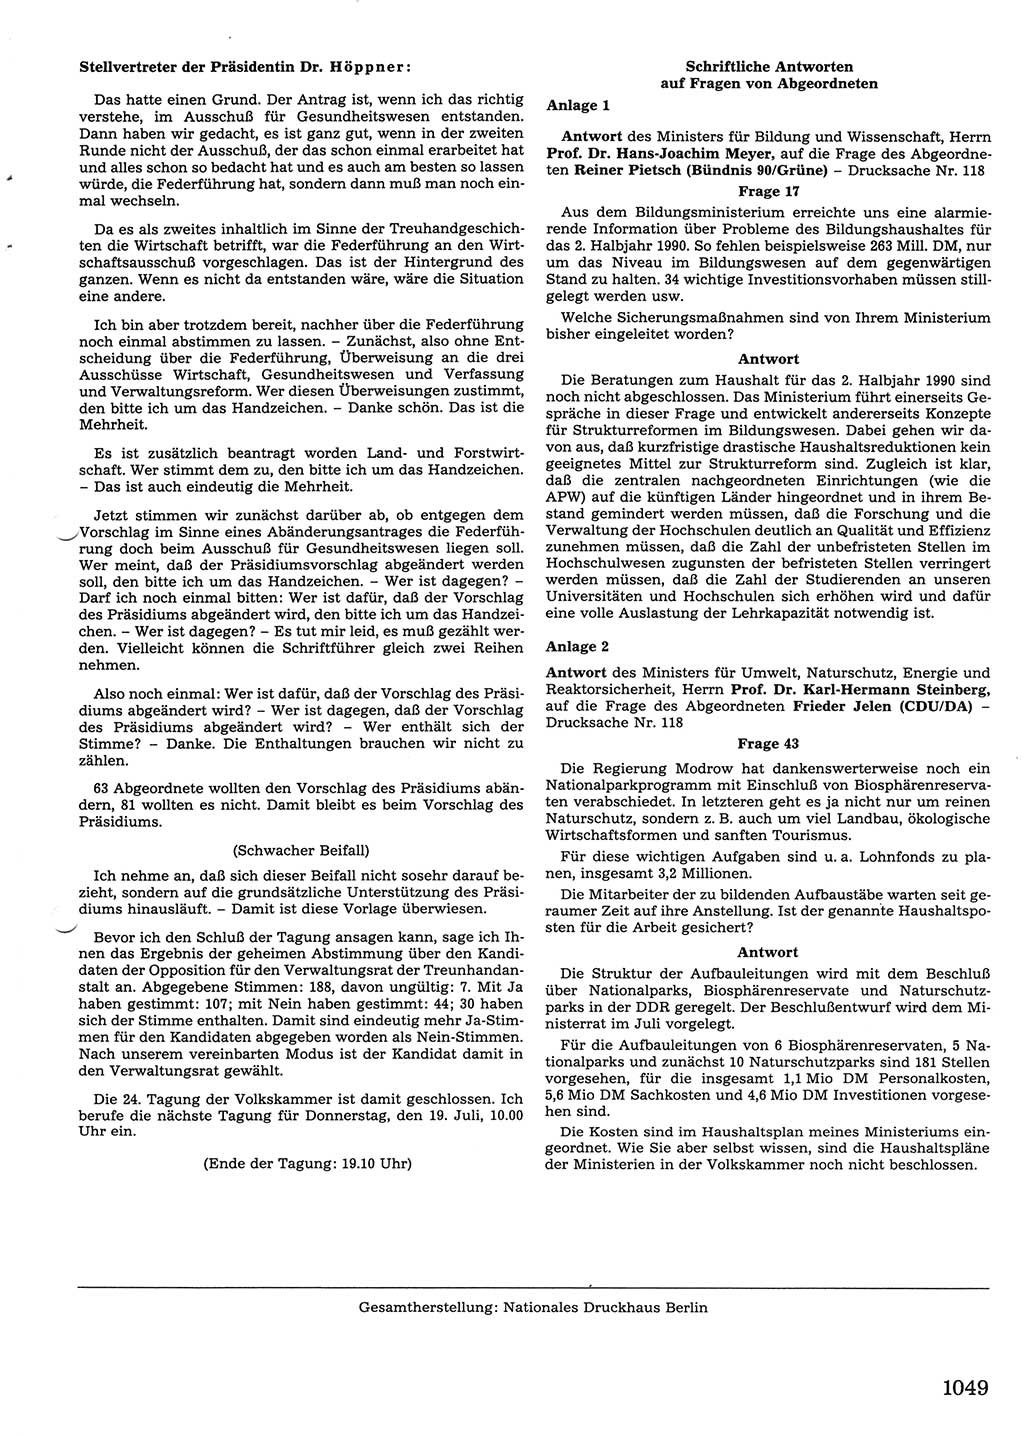 Tagungen der Volkskammer (VK) der Deutschen Demokratischen Republik (DDR), 10. Wahlperiode 1990, Seite 1049 (VK. DDR 10. WP. 1990, Prot. Tg. 1-38, 5.4.-2.10.1990, S. 1049)